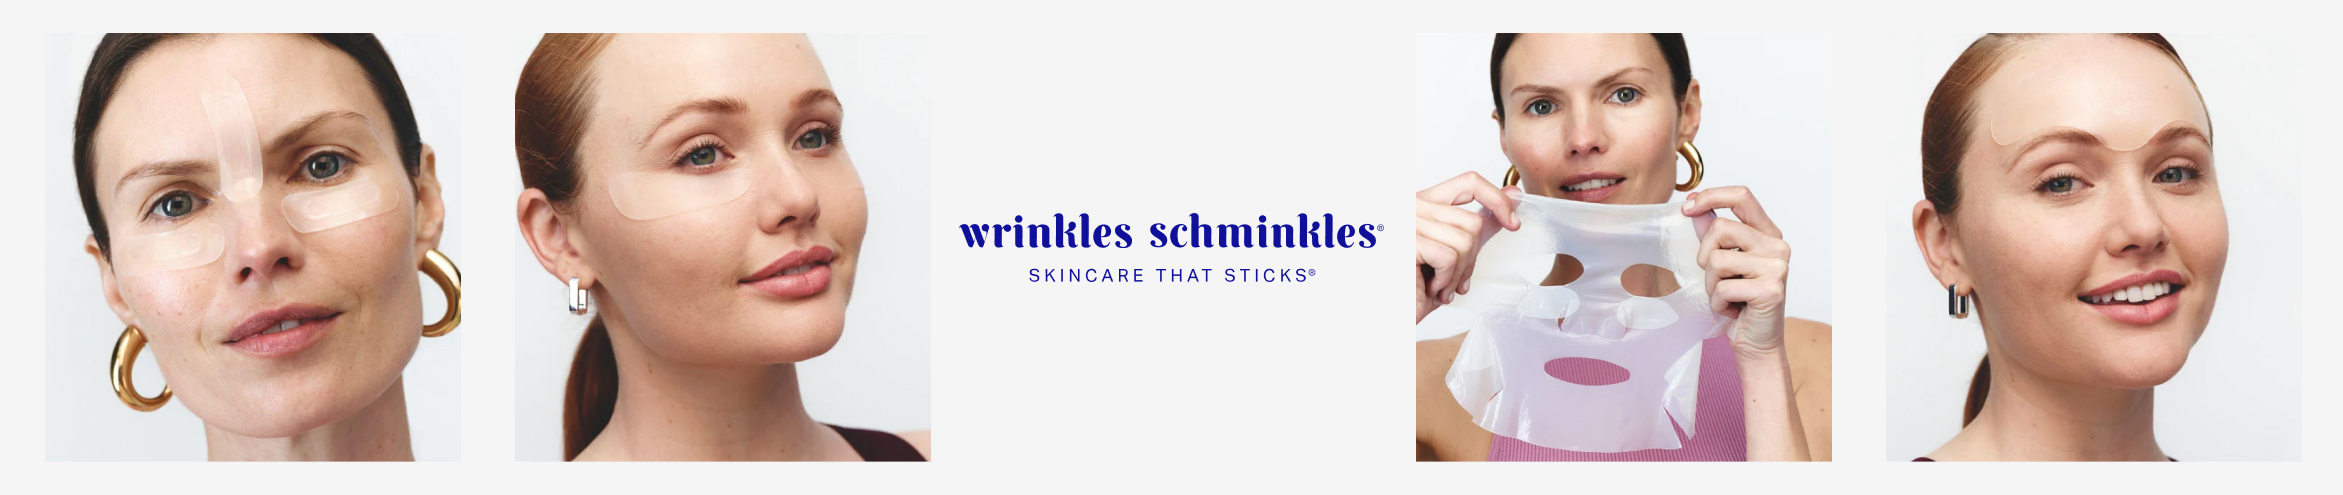 Wrinkles Schminkles - Face Mask